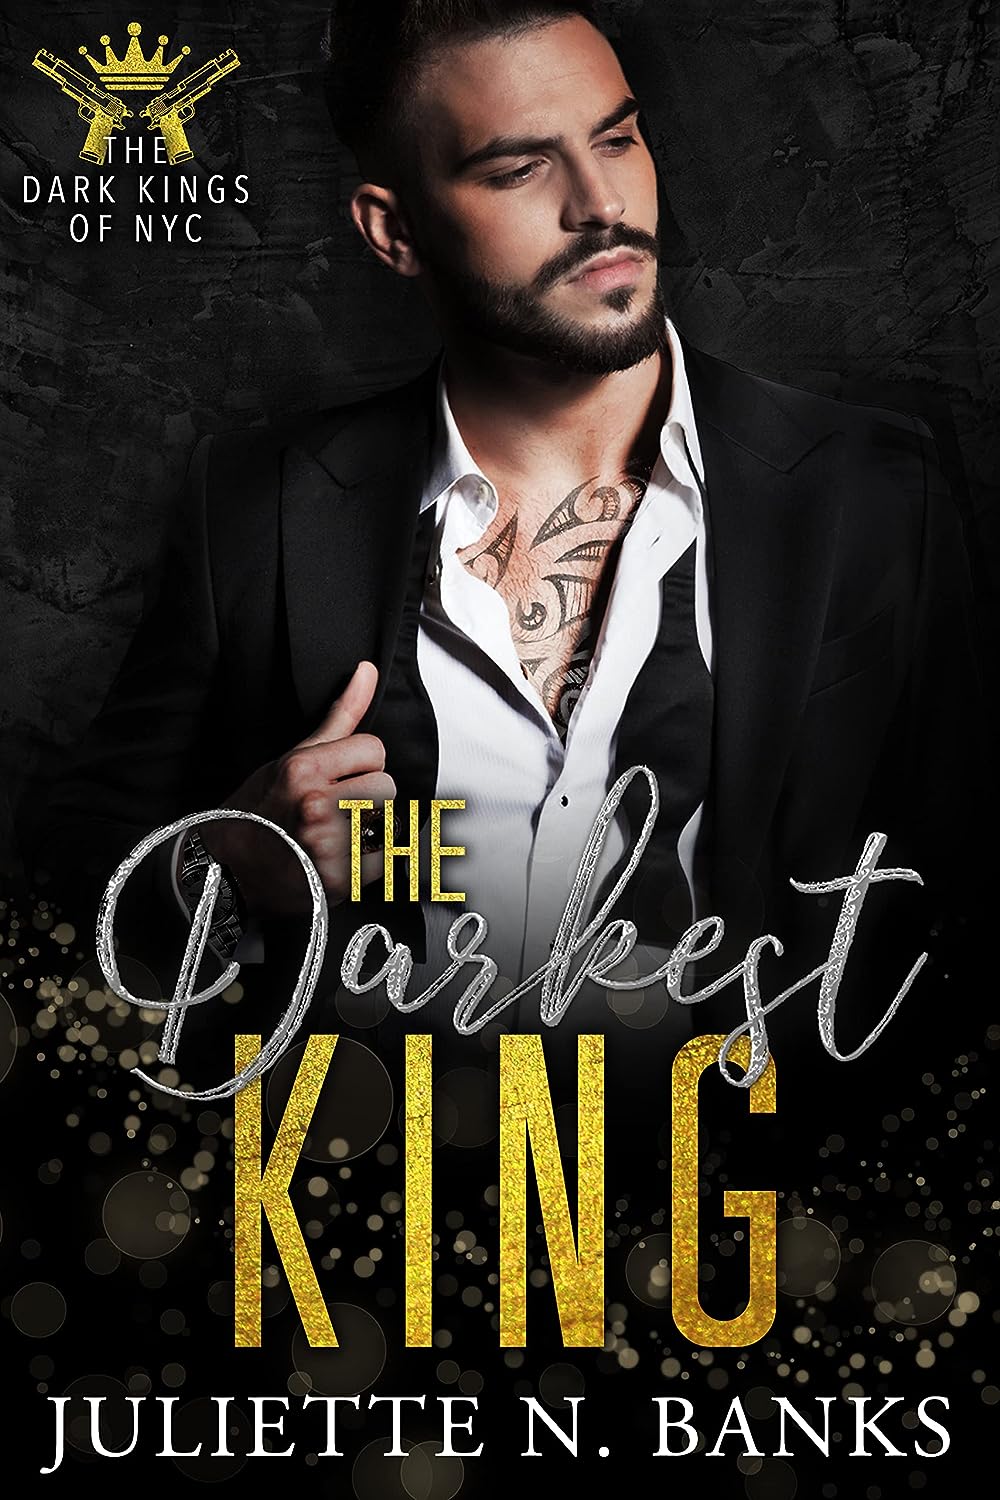 The Darkest King A Dark Mafia Romance The Dark Kings of NYC